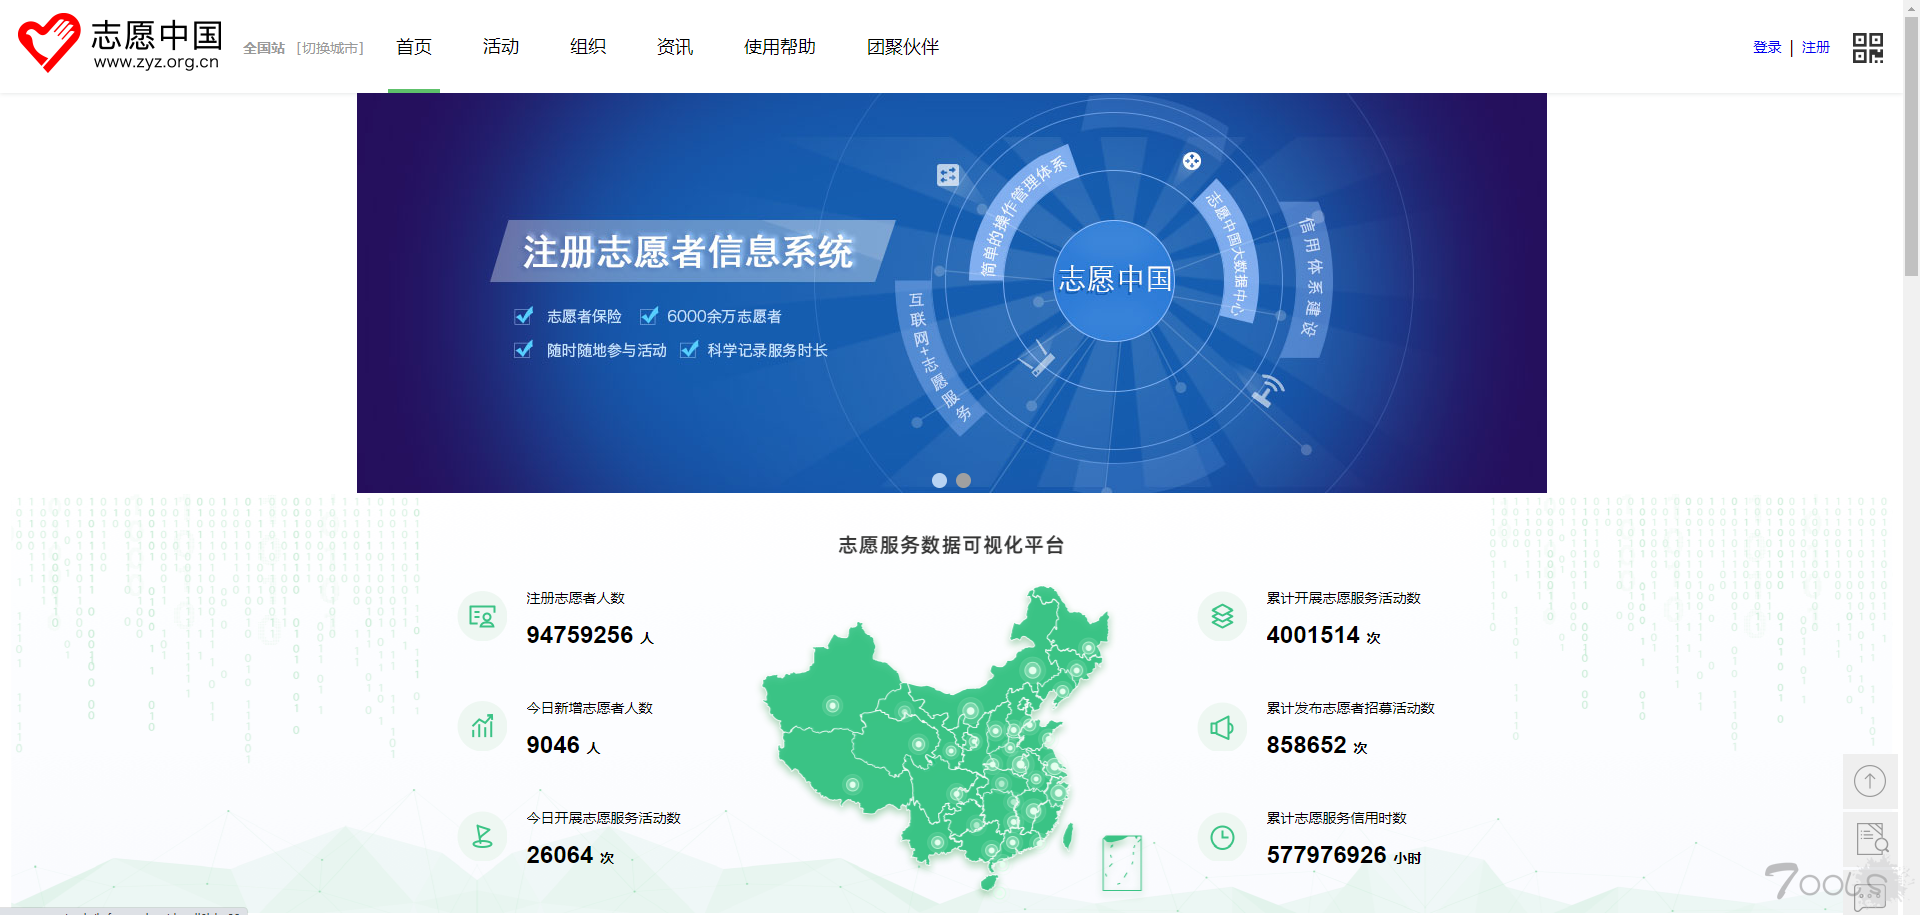 志愿中国/志愿汇 用户数据遭到泄露被公开售卖